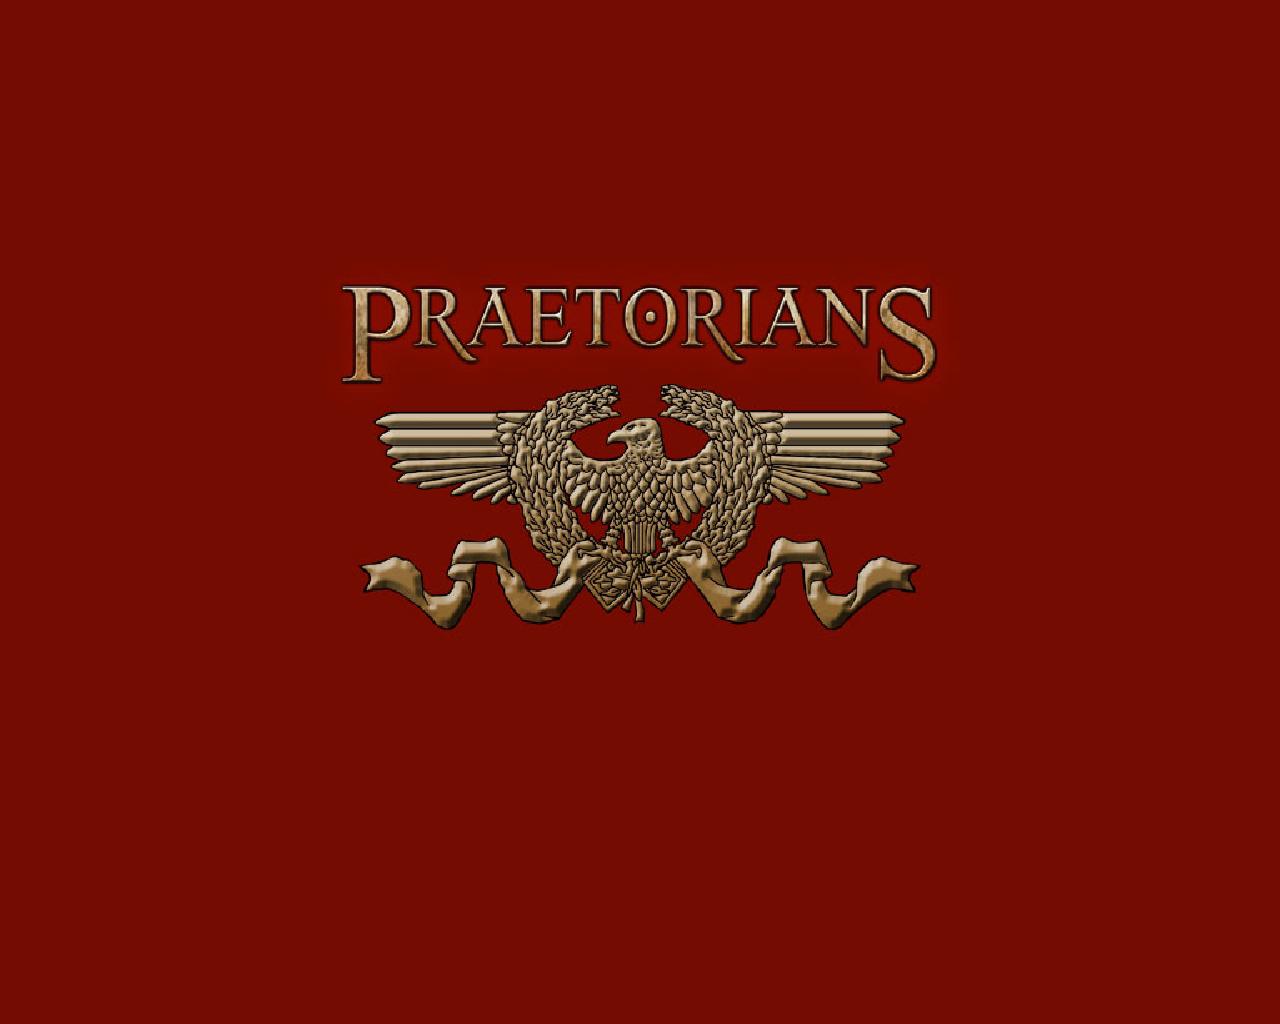 Praetorians_02_1280x1024.jpg